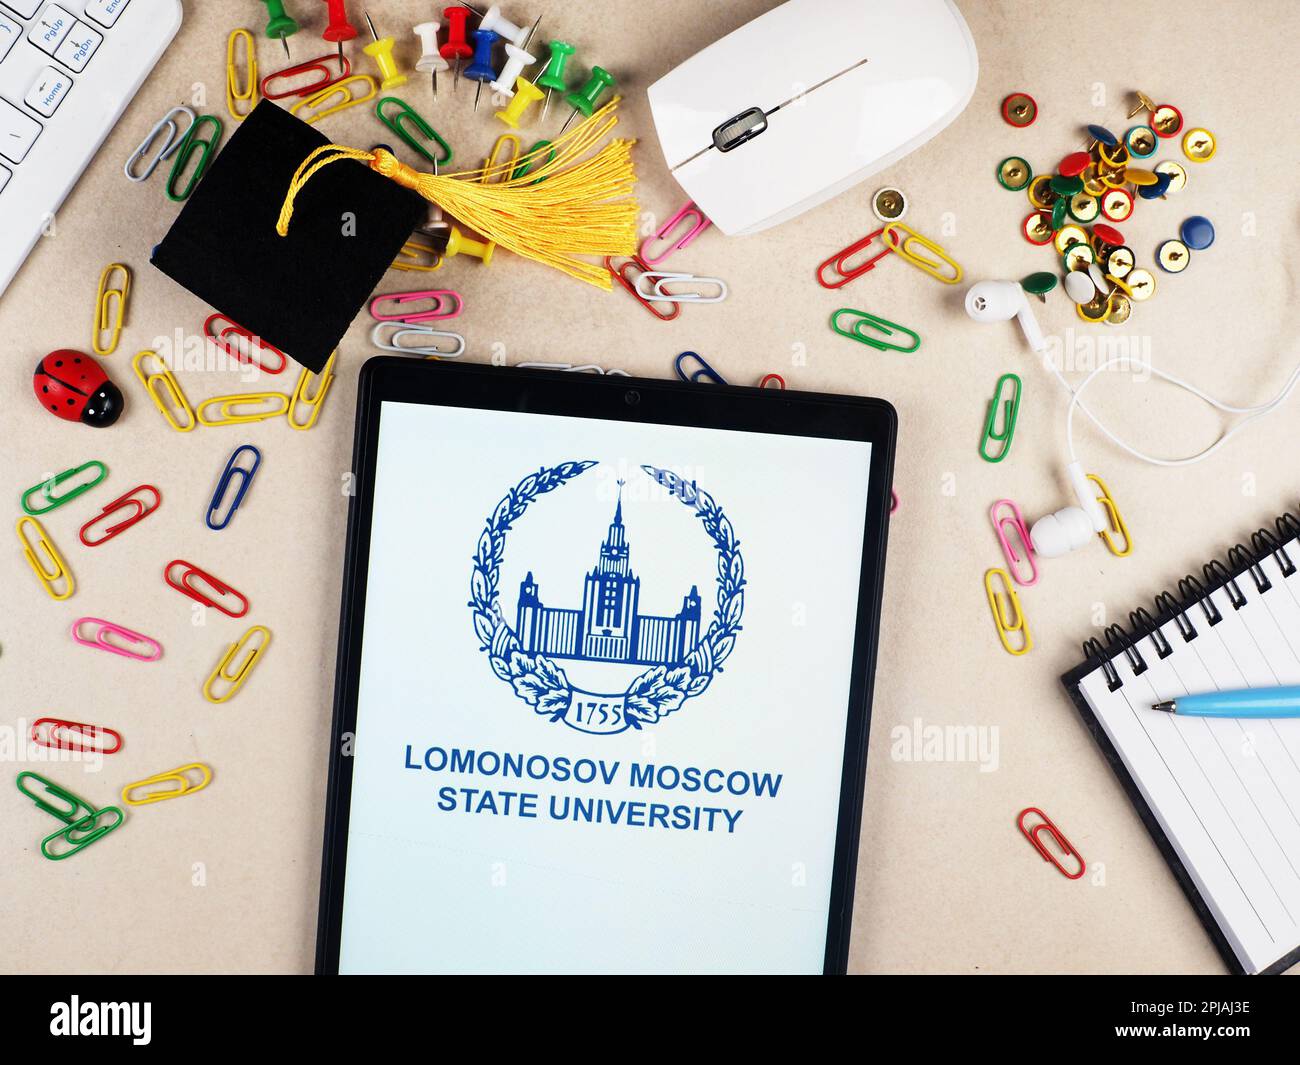 En esta ilustración fotográfica, el logotipo de la Universidad Estatal de Moscú Lomonosov se muestra en una tableta. Foto de stock